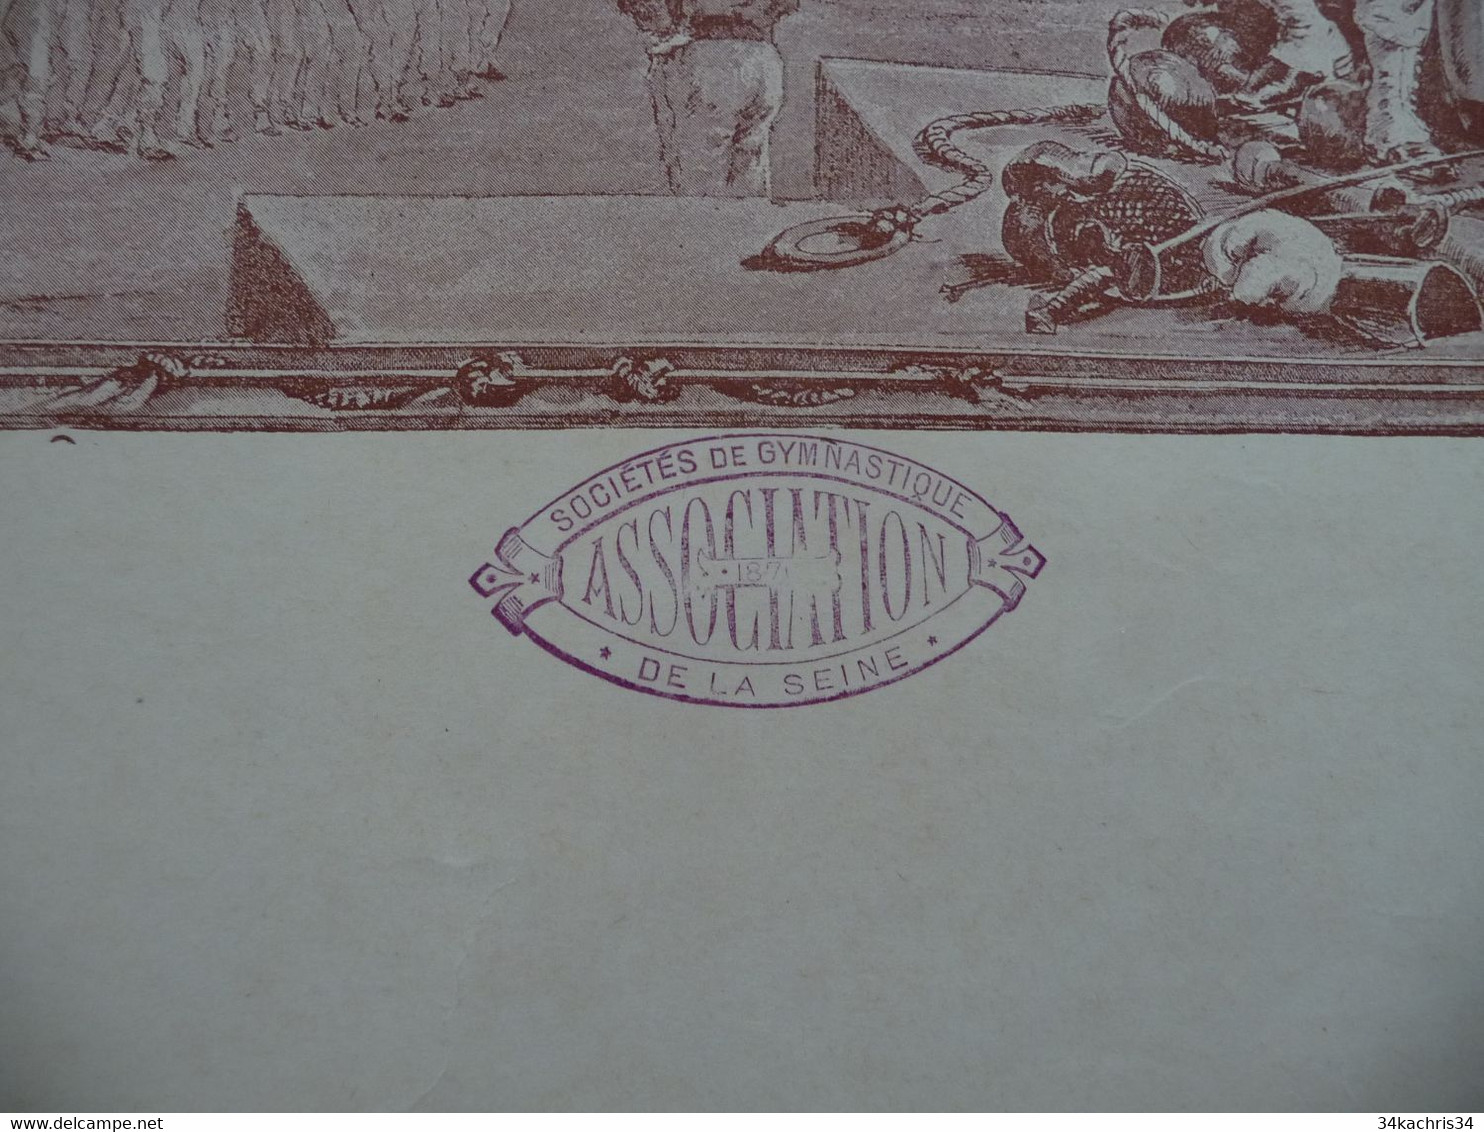 Diplôme Seine 5ème Concours De Gymnastique Illustré Par Paul Merwat 06/11/1887 Prix De Courses 56 X 45 - Diplômes & Bulletins Scolaires